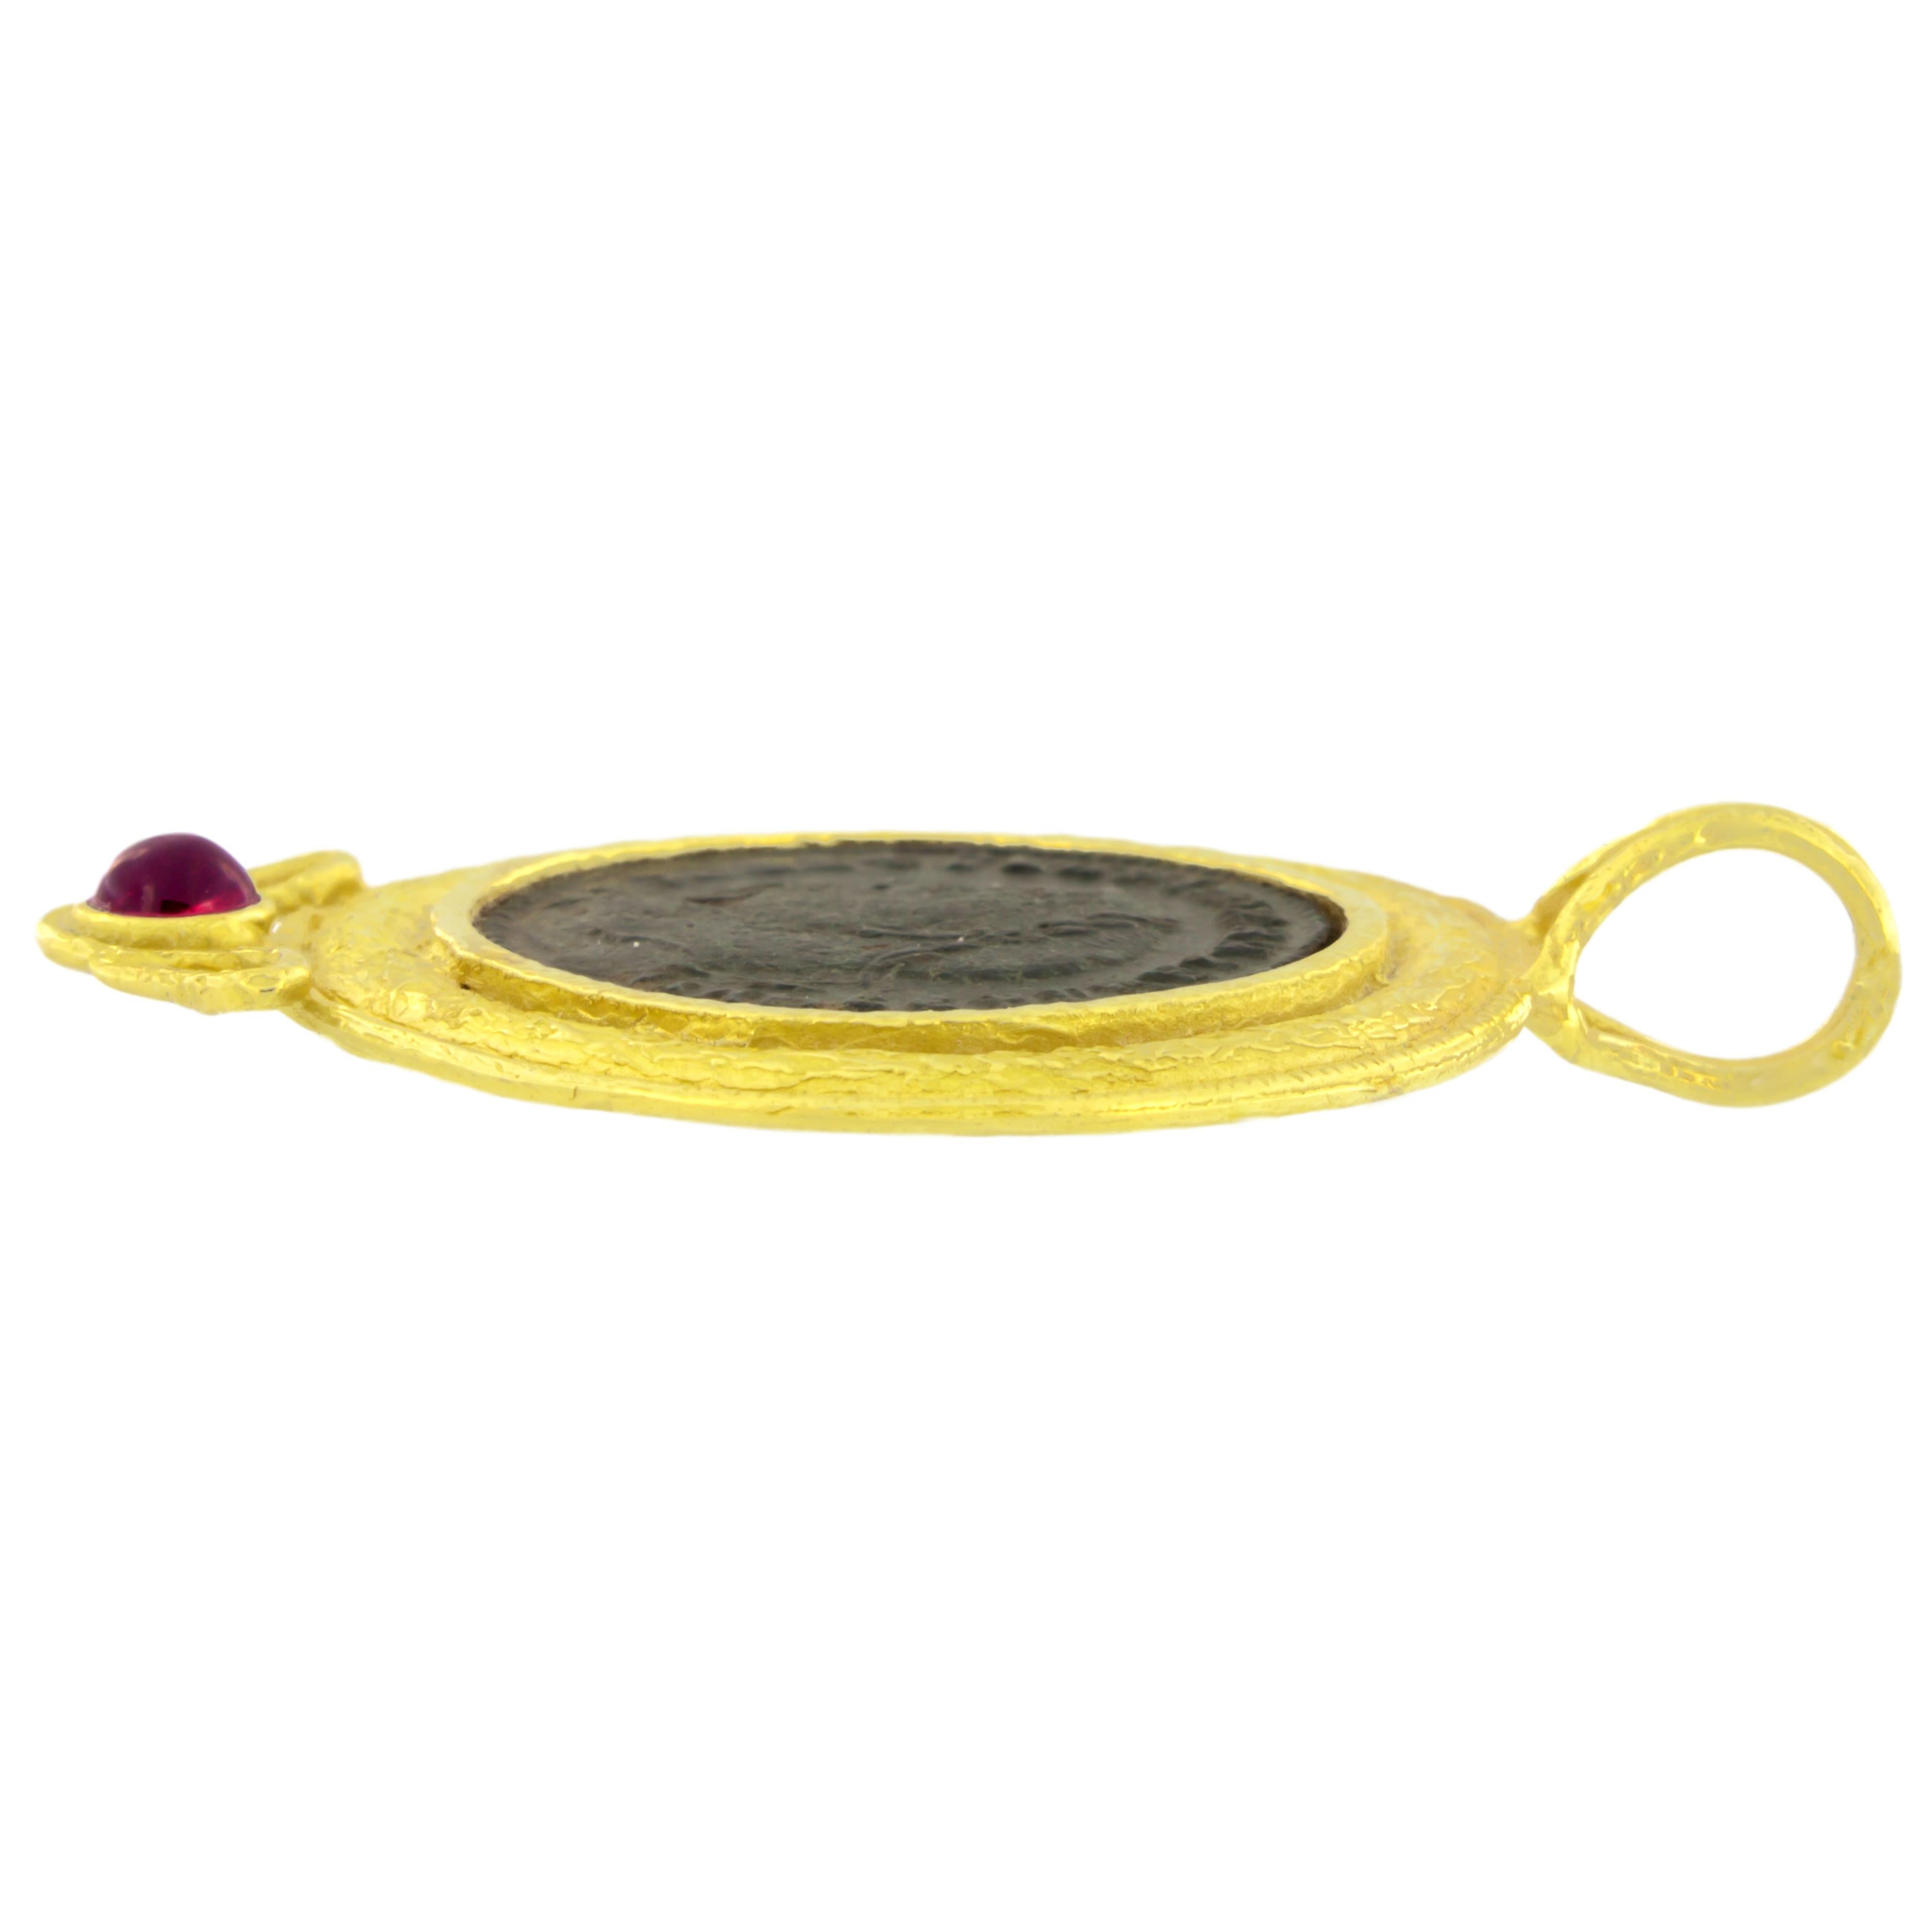 Pendentif en or jaune satiné avec pièce de monnaie romaine antique et tourmaline, de la collection Roma de Sacchi, réalisé à la main selon la technique du moulage à la cire perdue.

Le moulage à la cire perdue, l'une des plus anciennes techniques de